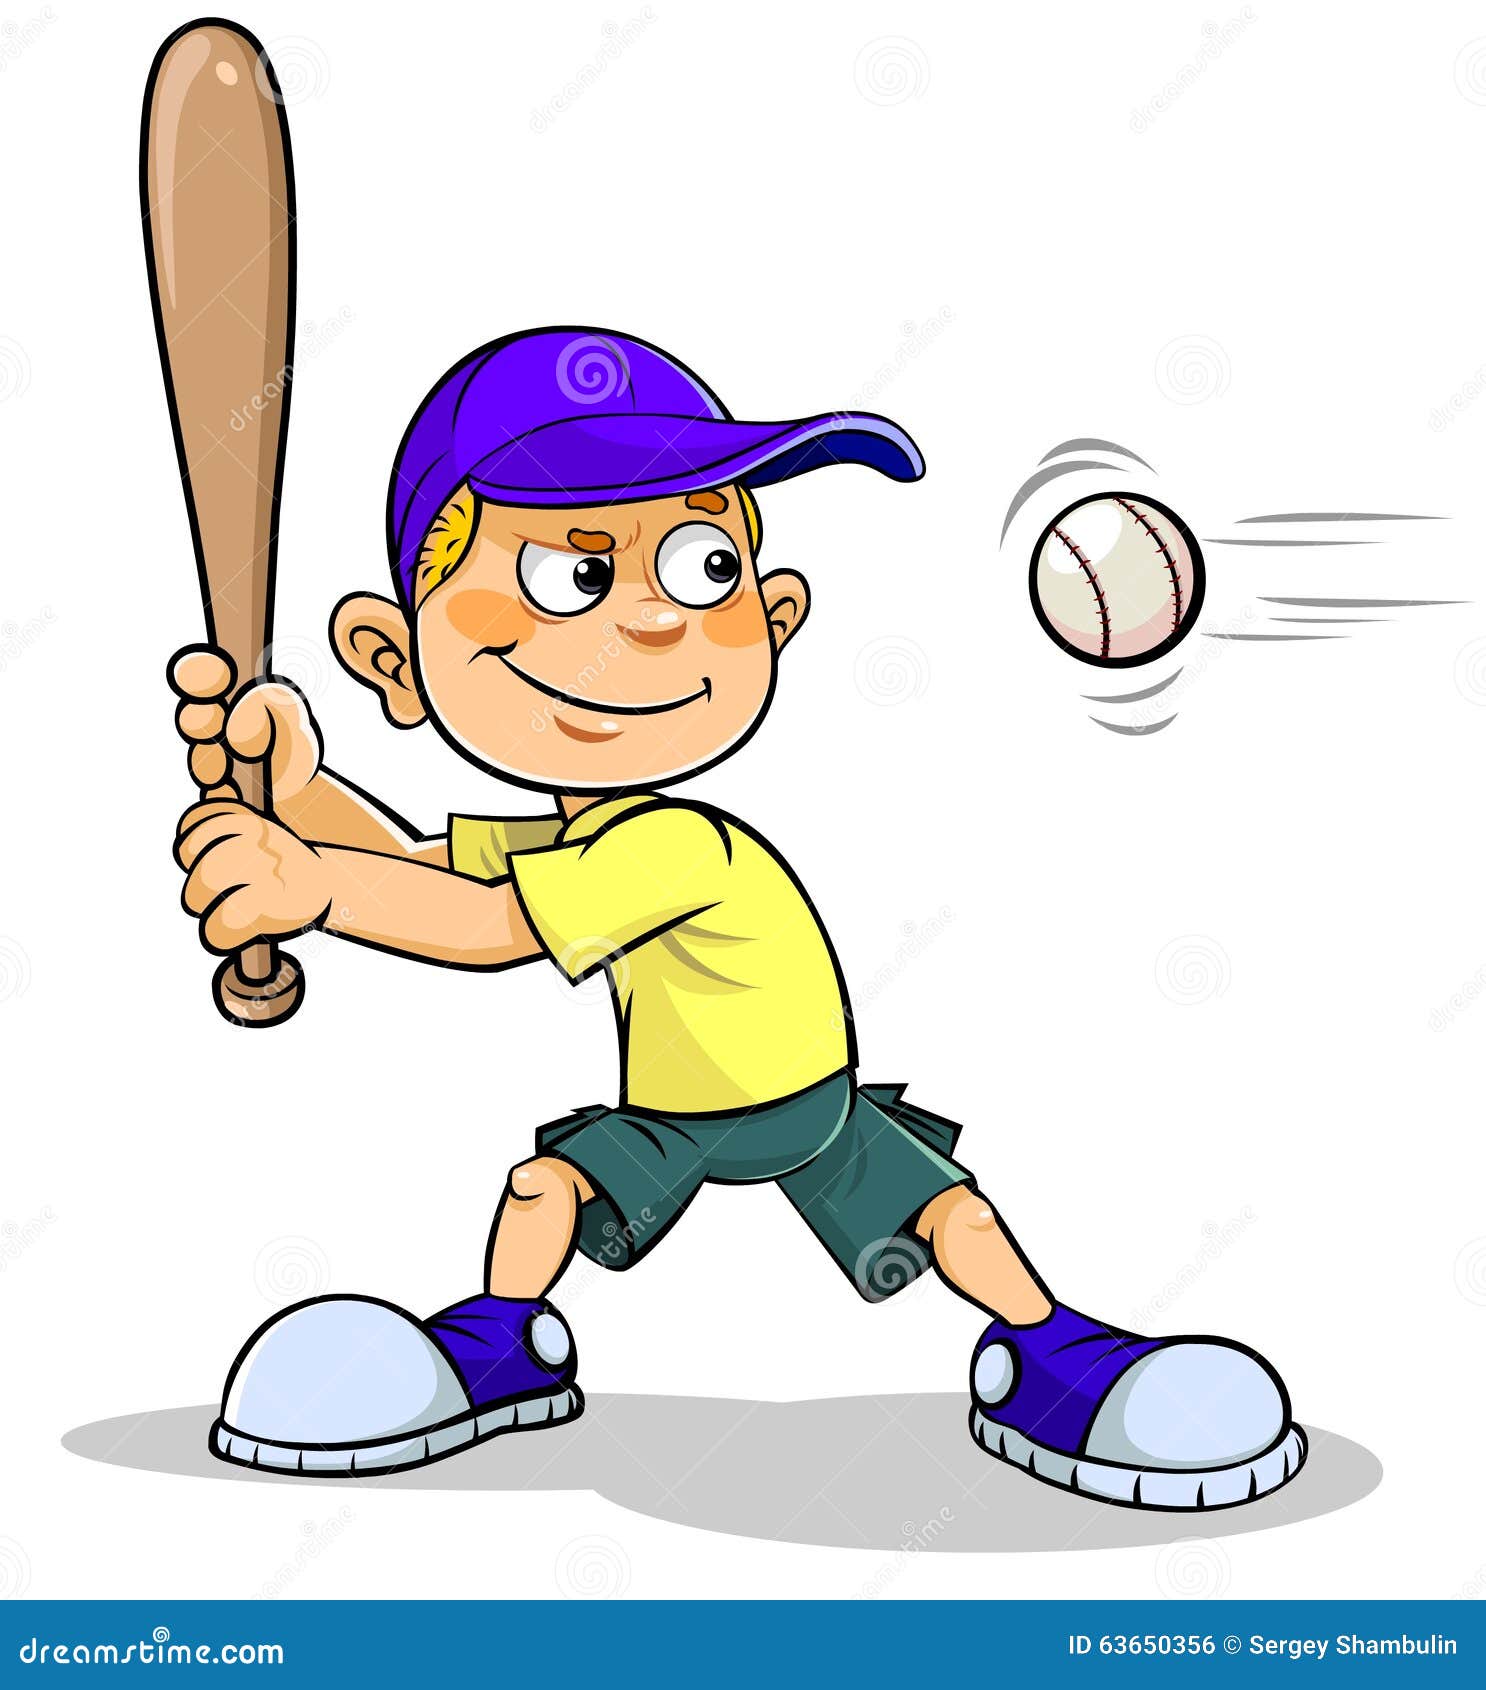 He can catch. Мультяшный бейсболист. Бейсболист для детей мультяшные. Спорт с битой и мячом. Бейсбол игра для детей.